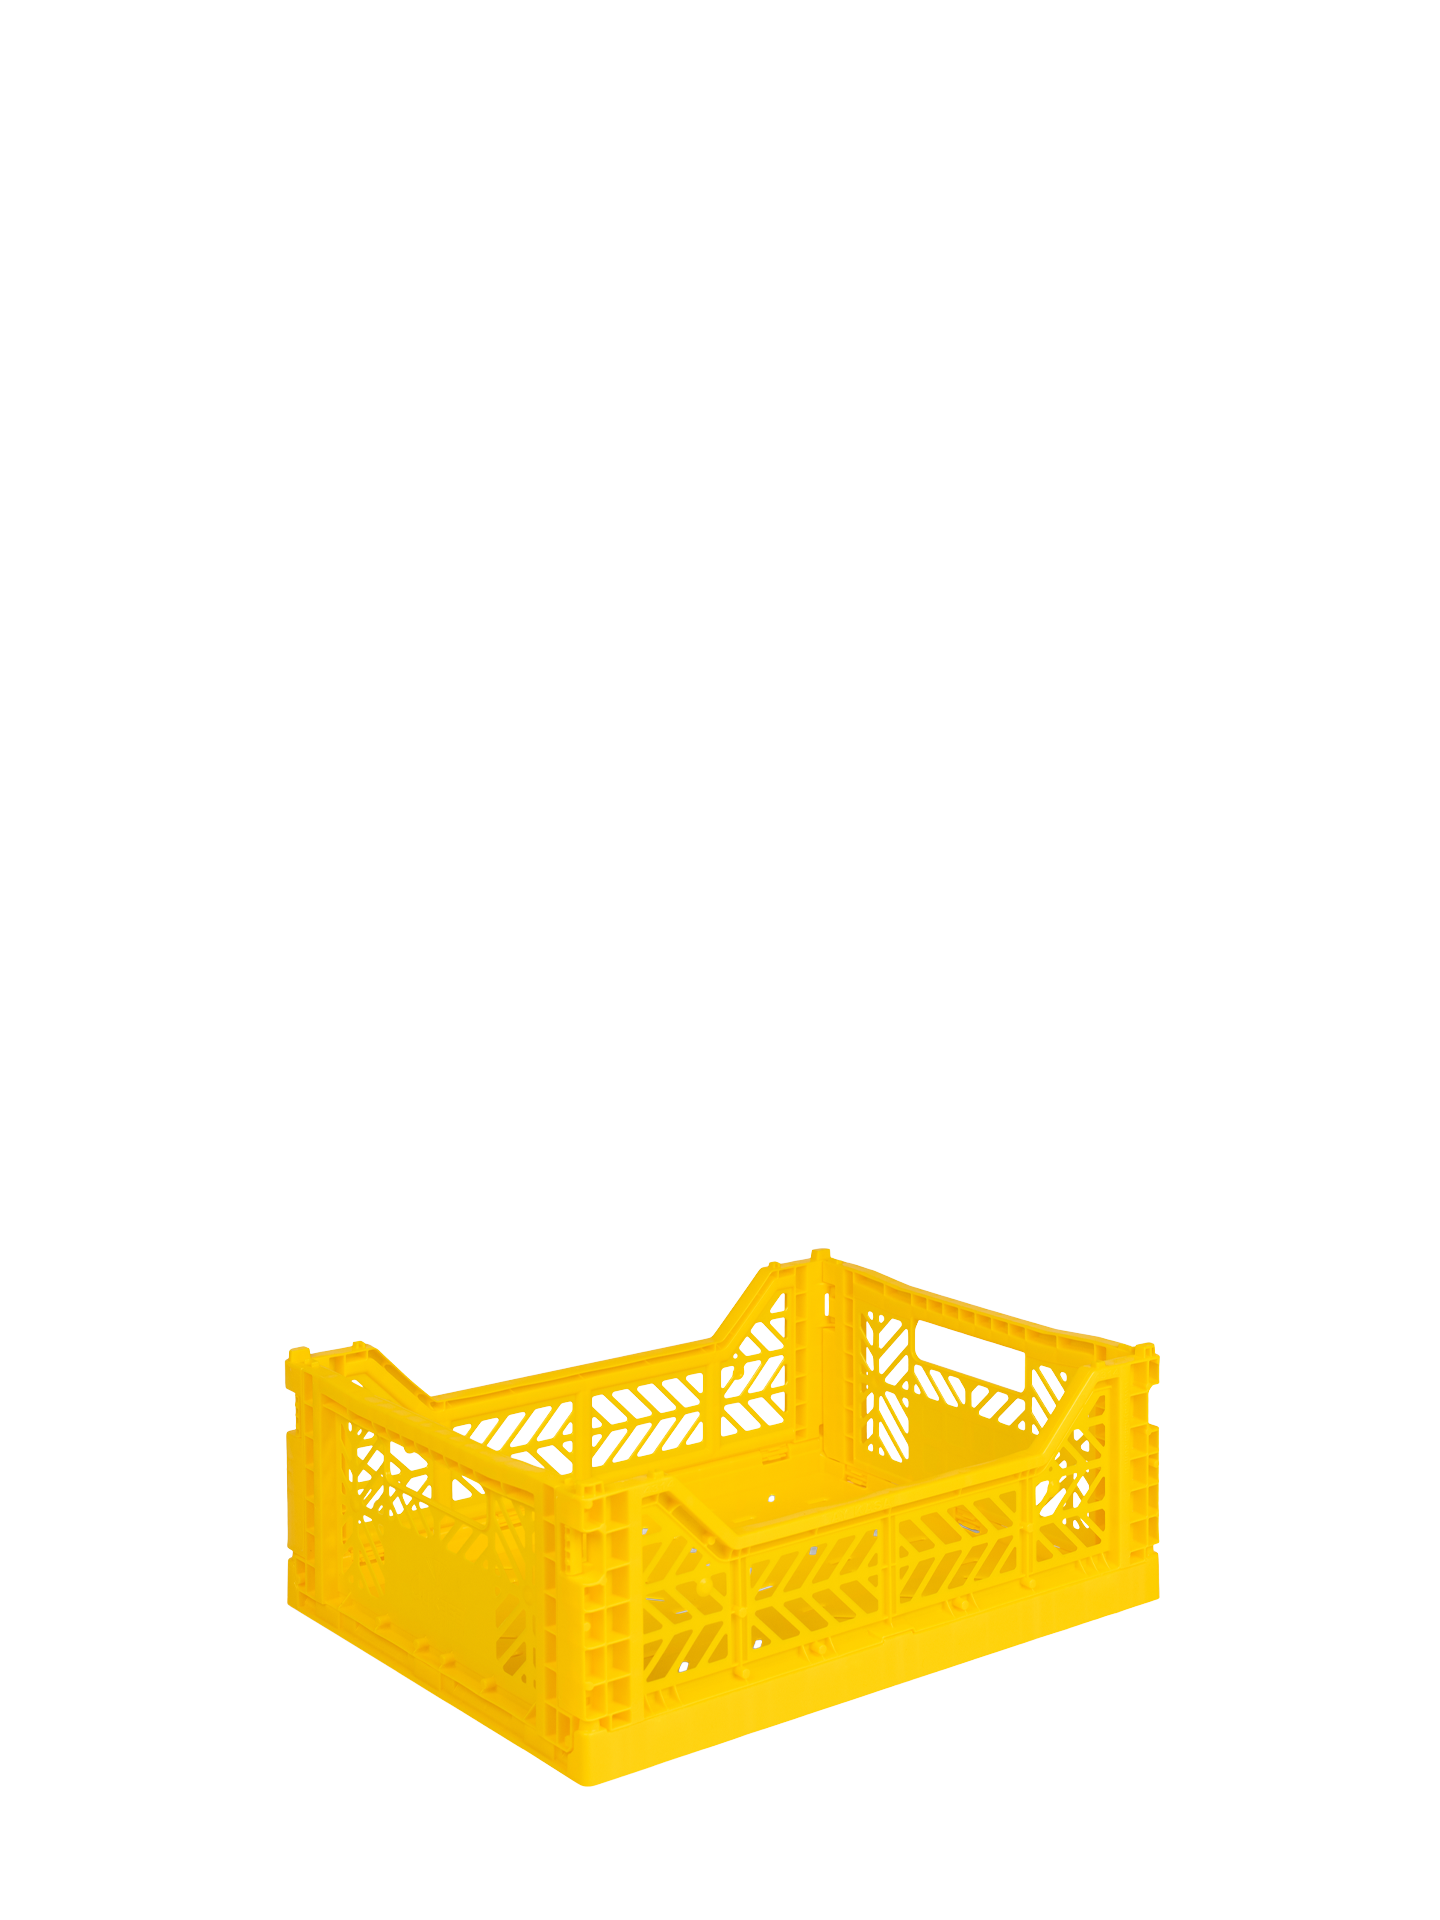 The Aykasa medium size storage box in sunflower Yellow.